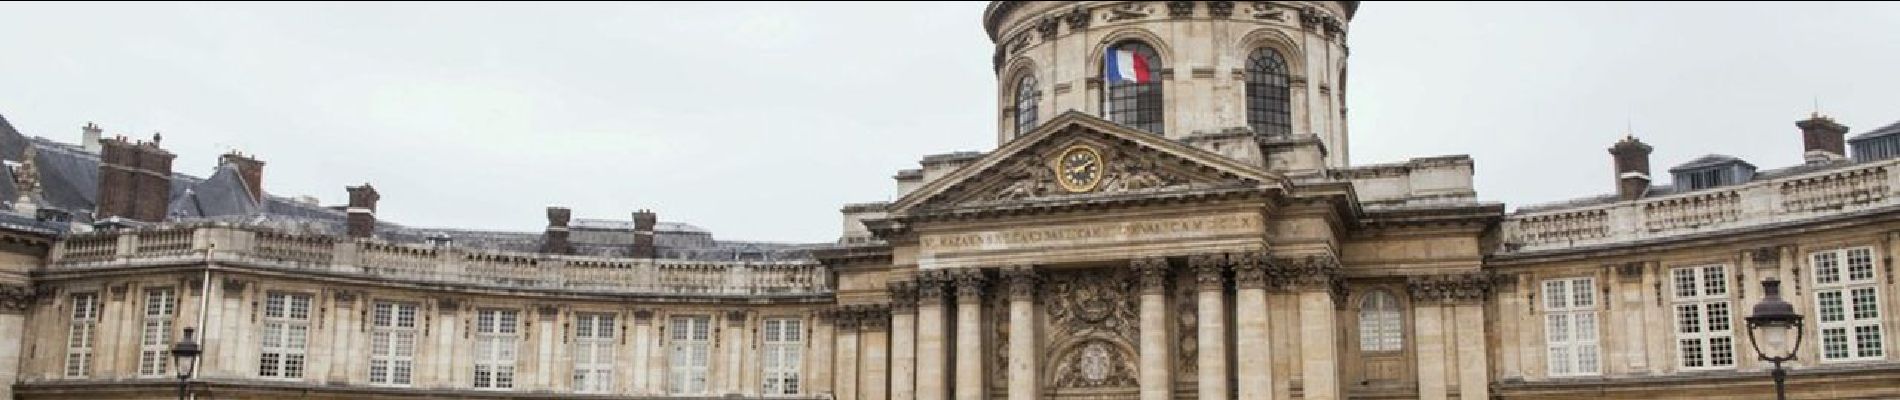 Point of interest Paris - Institut de France - Photo